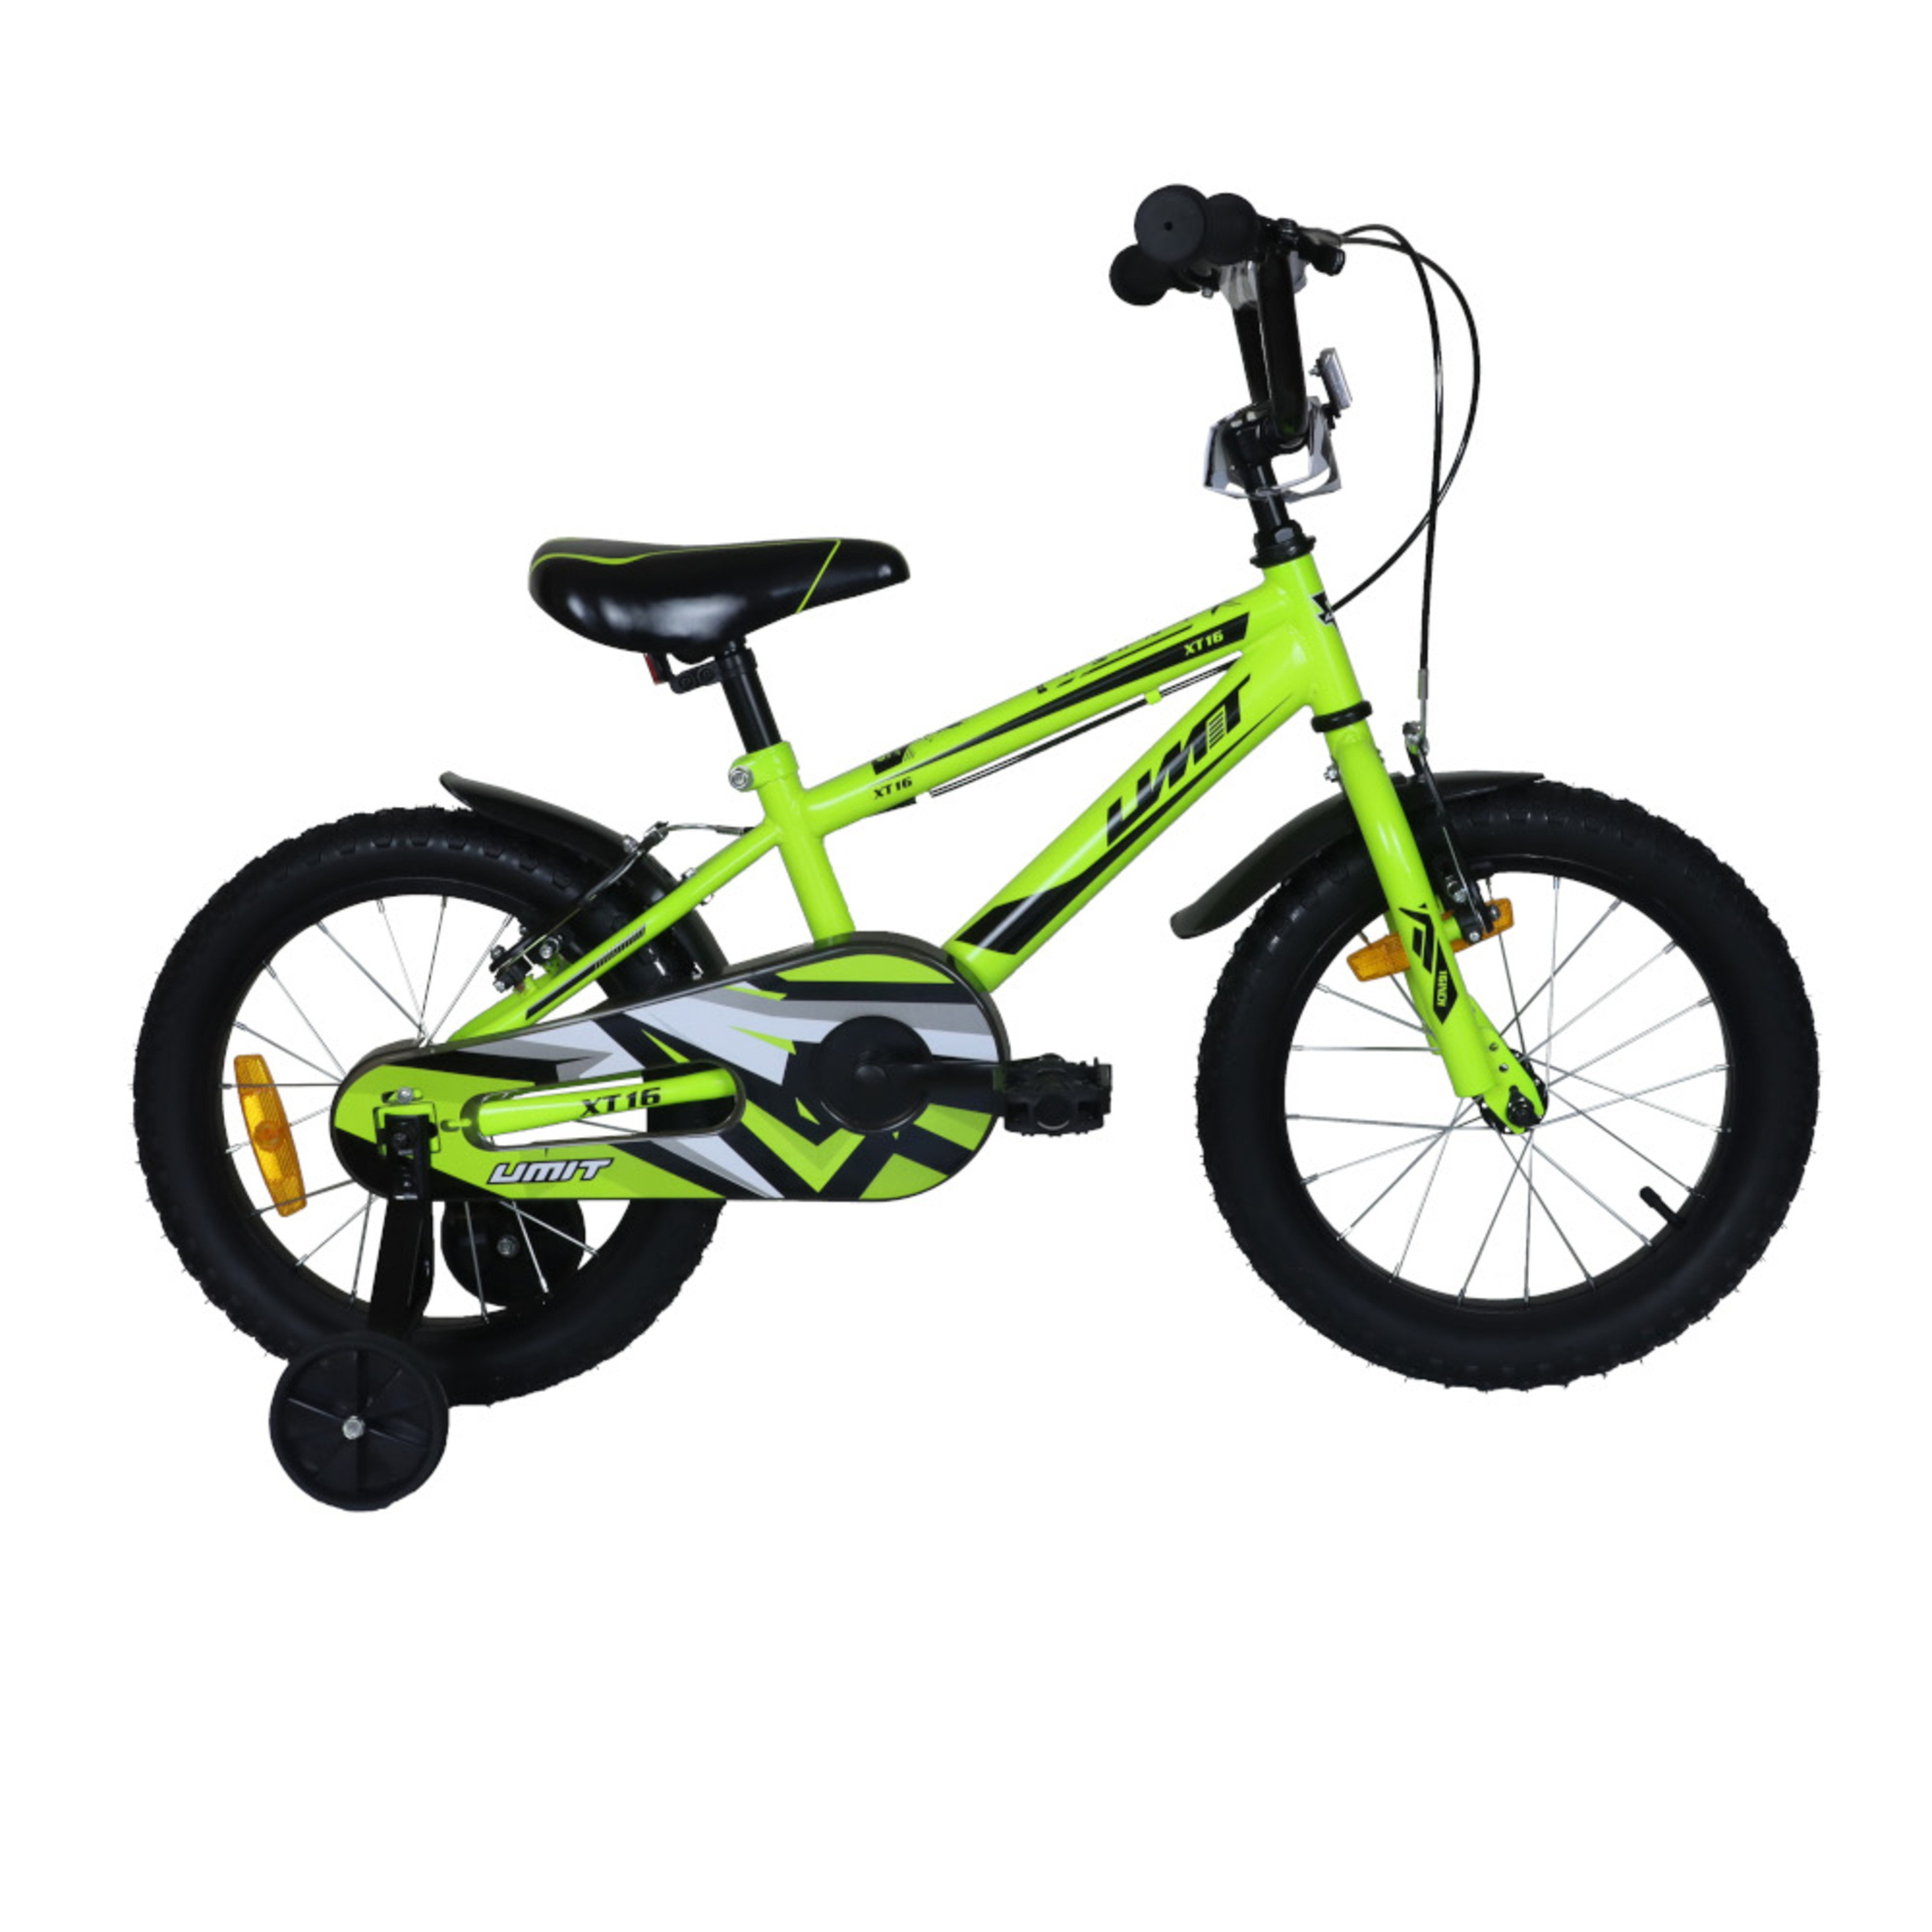 Xt16 Mountain Bike Infantil Verde - verde - 